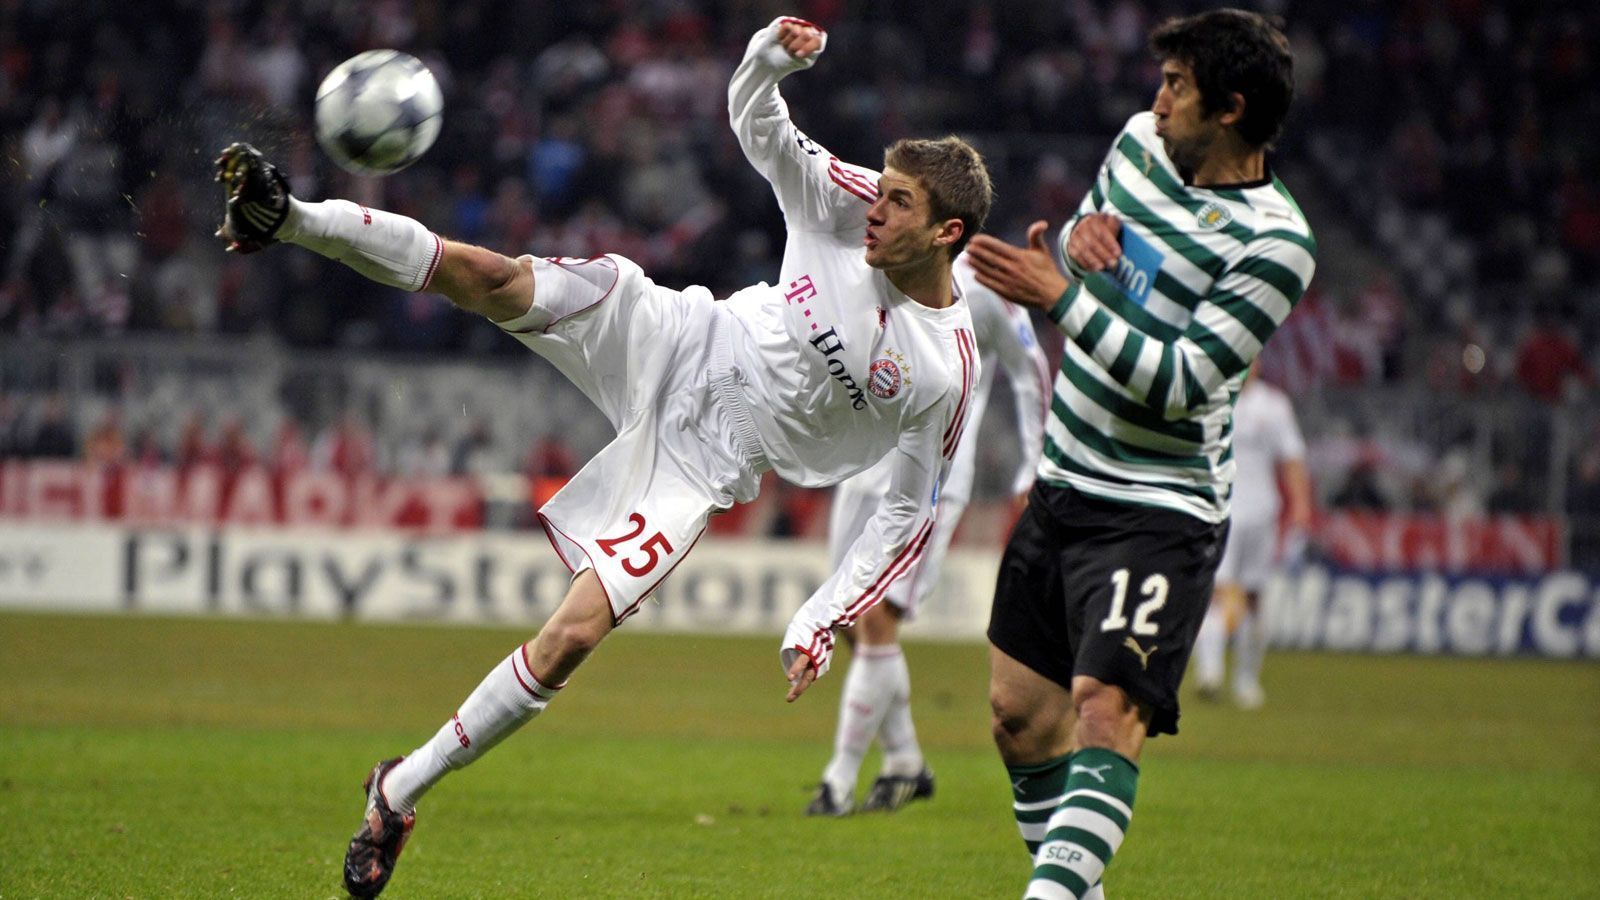 
                <strong>Platz 8: Thomas Müller</strong><br>
                Alter: 19 Jahre, fünf Monate und 25 TageDamaliger Verein: FC Bayern MünchenGegner und Endergebnis: 7:1 gegen Sporting Lissabon (09/10)
              